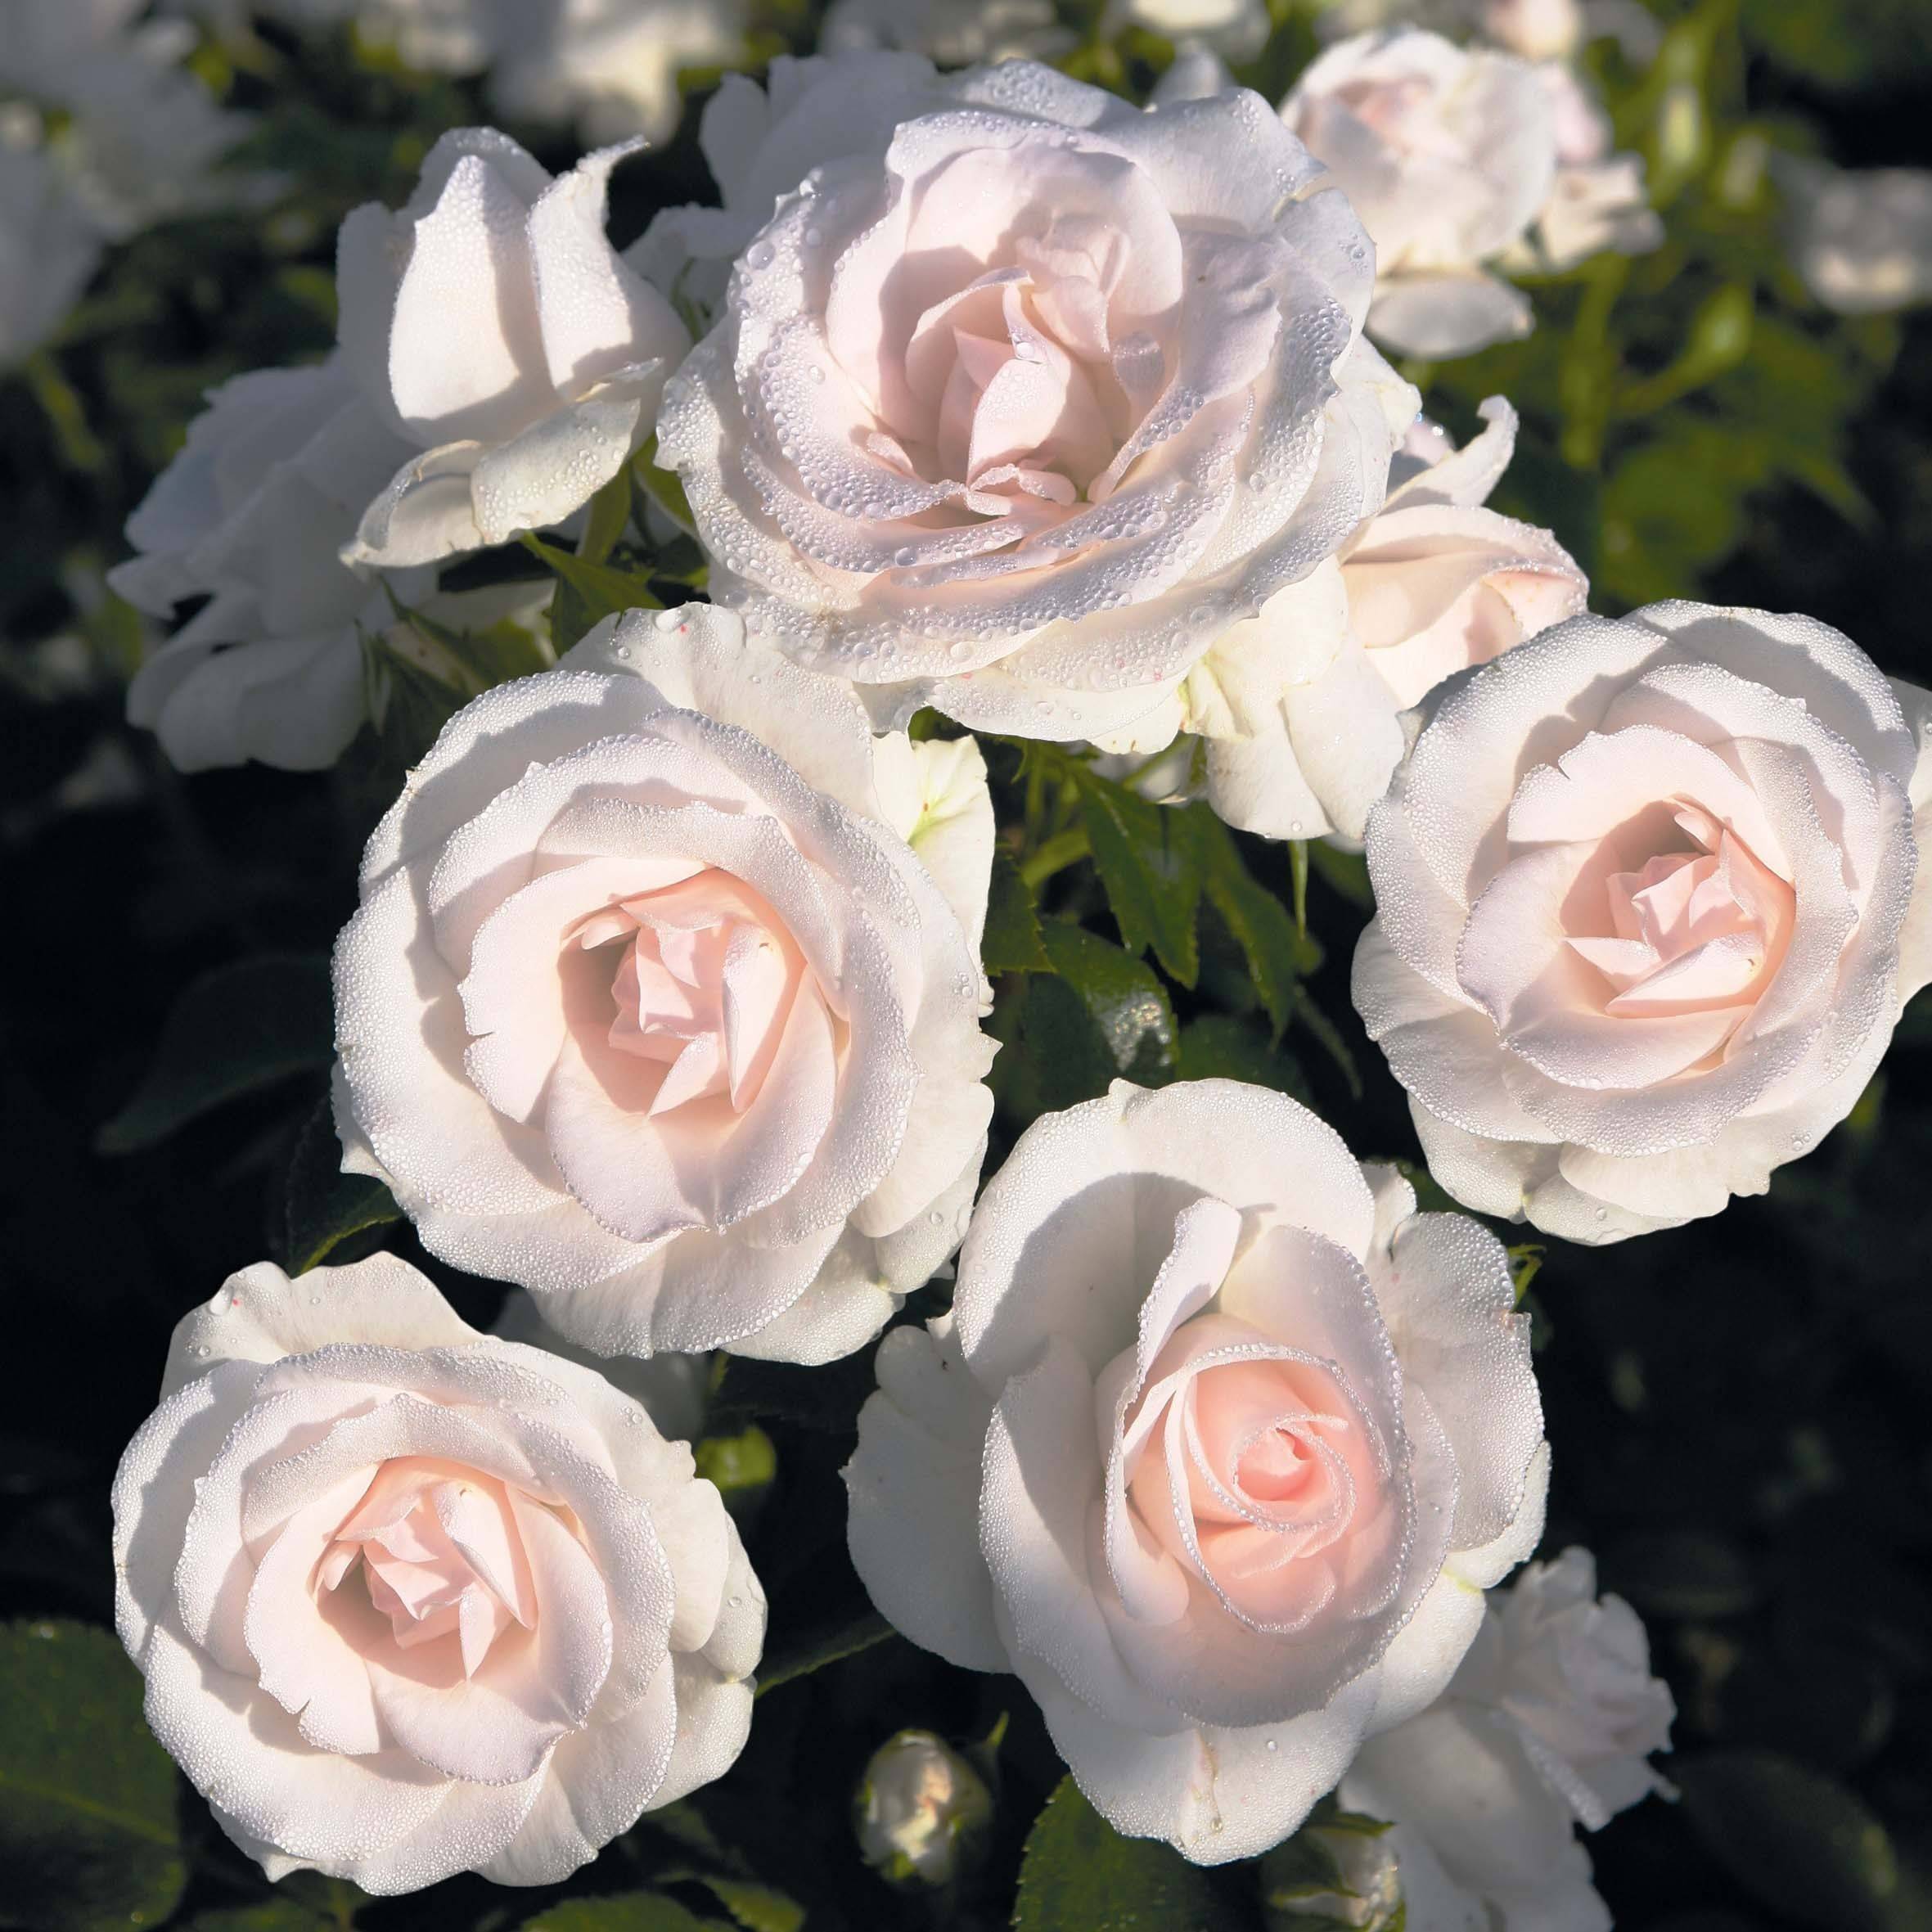 Описание сорта розы “аспирин” (aspirin rose) с отзывами, посадки, ухода с фото